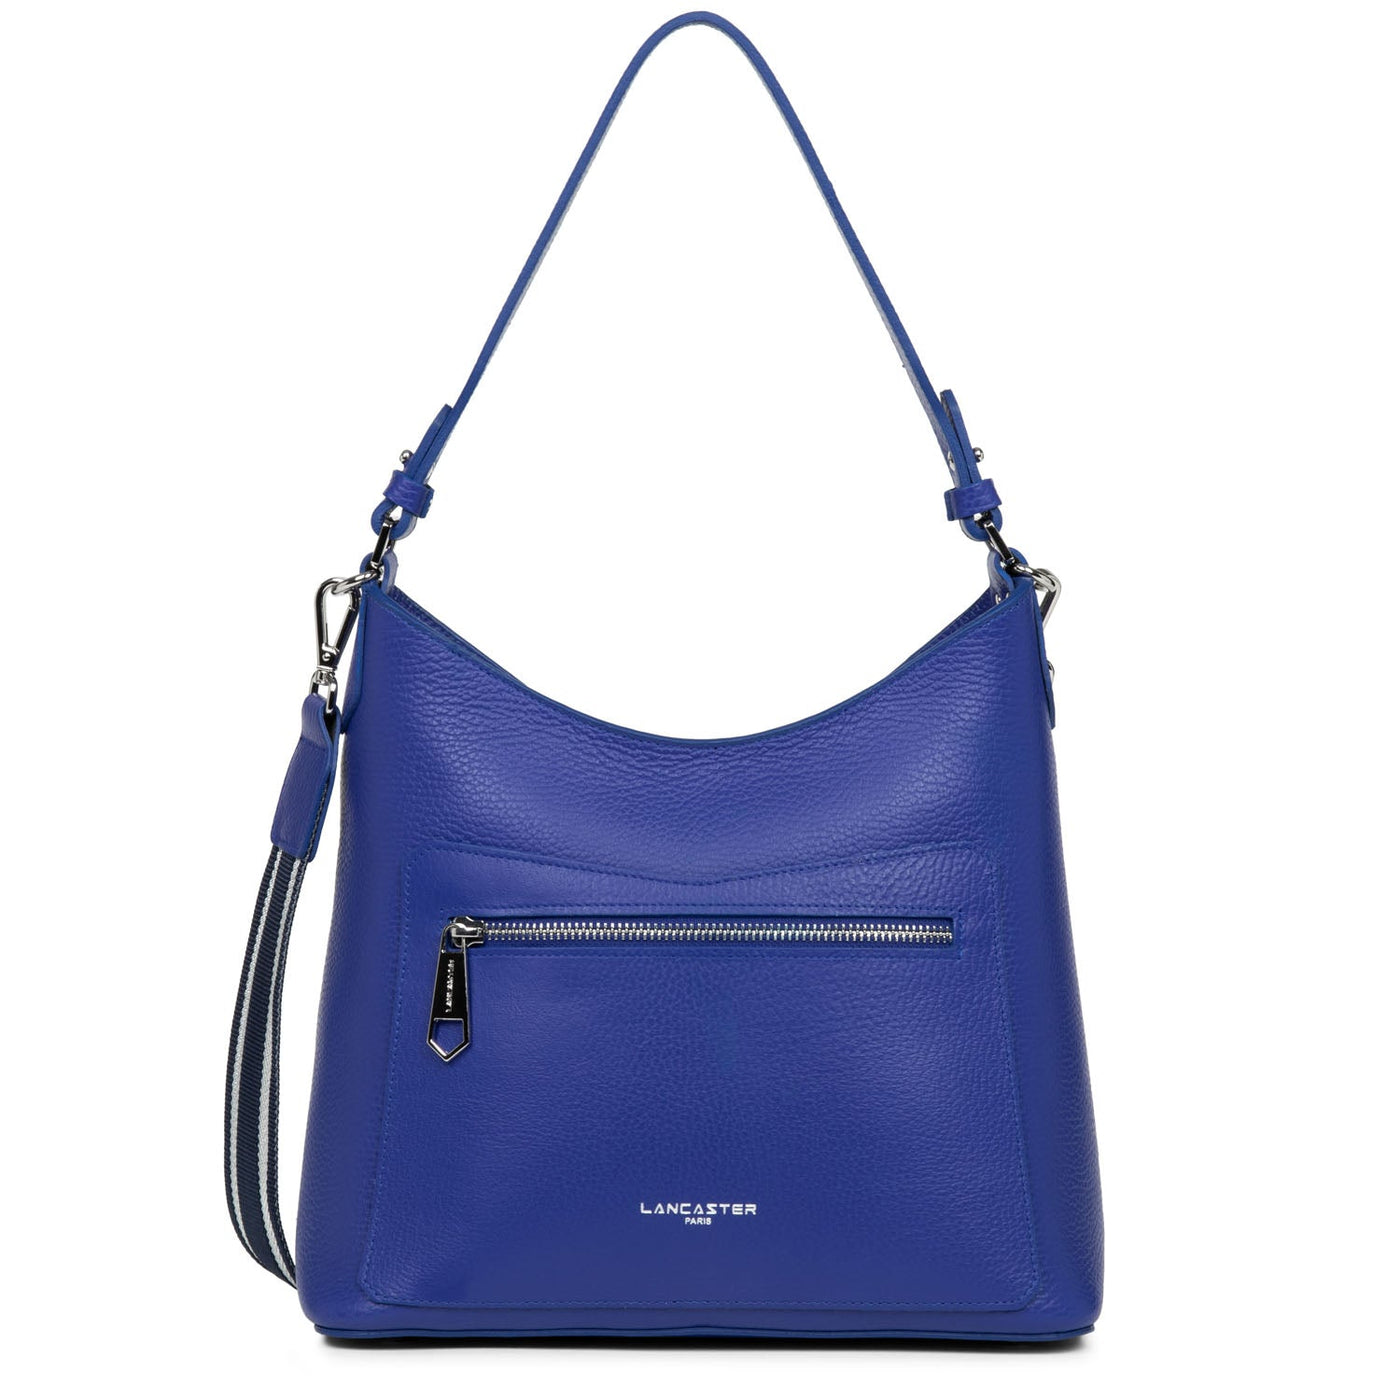 shoulder bag - foulonne double #couleur_bleu-lectrique-in-vert